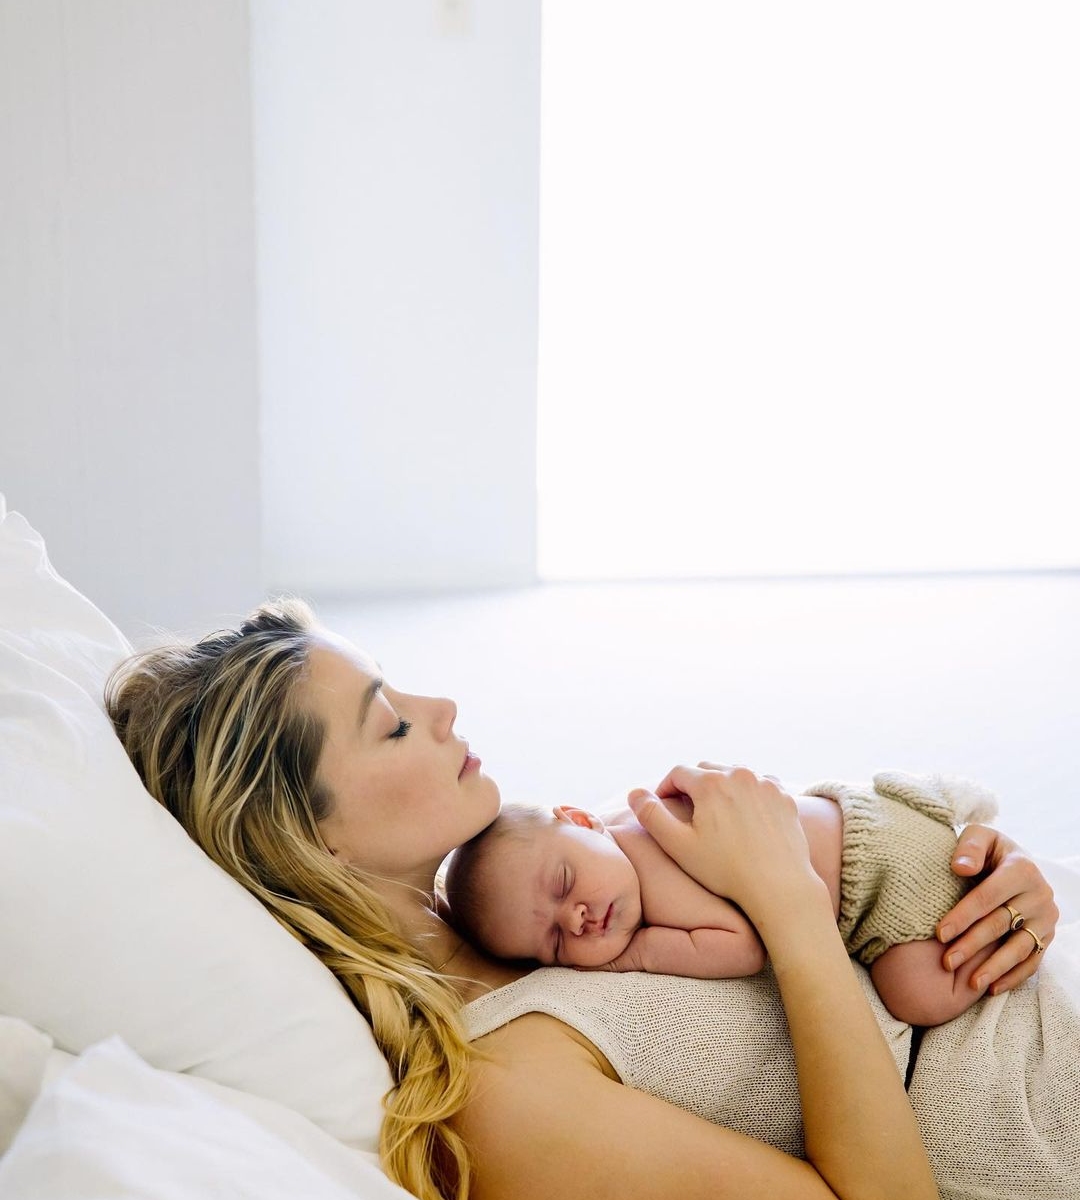 Η Paris Hilton ανακοίνωσε ότι έγινε μαμά- Η πρώτη φωτογραφία με τον νεογέννητο γιο της